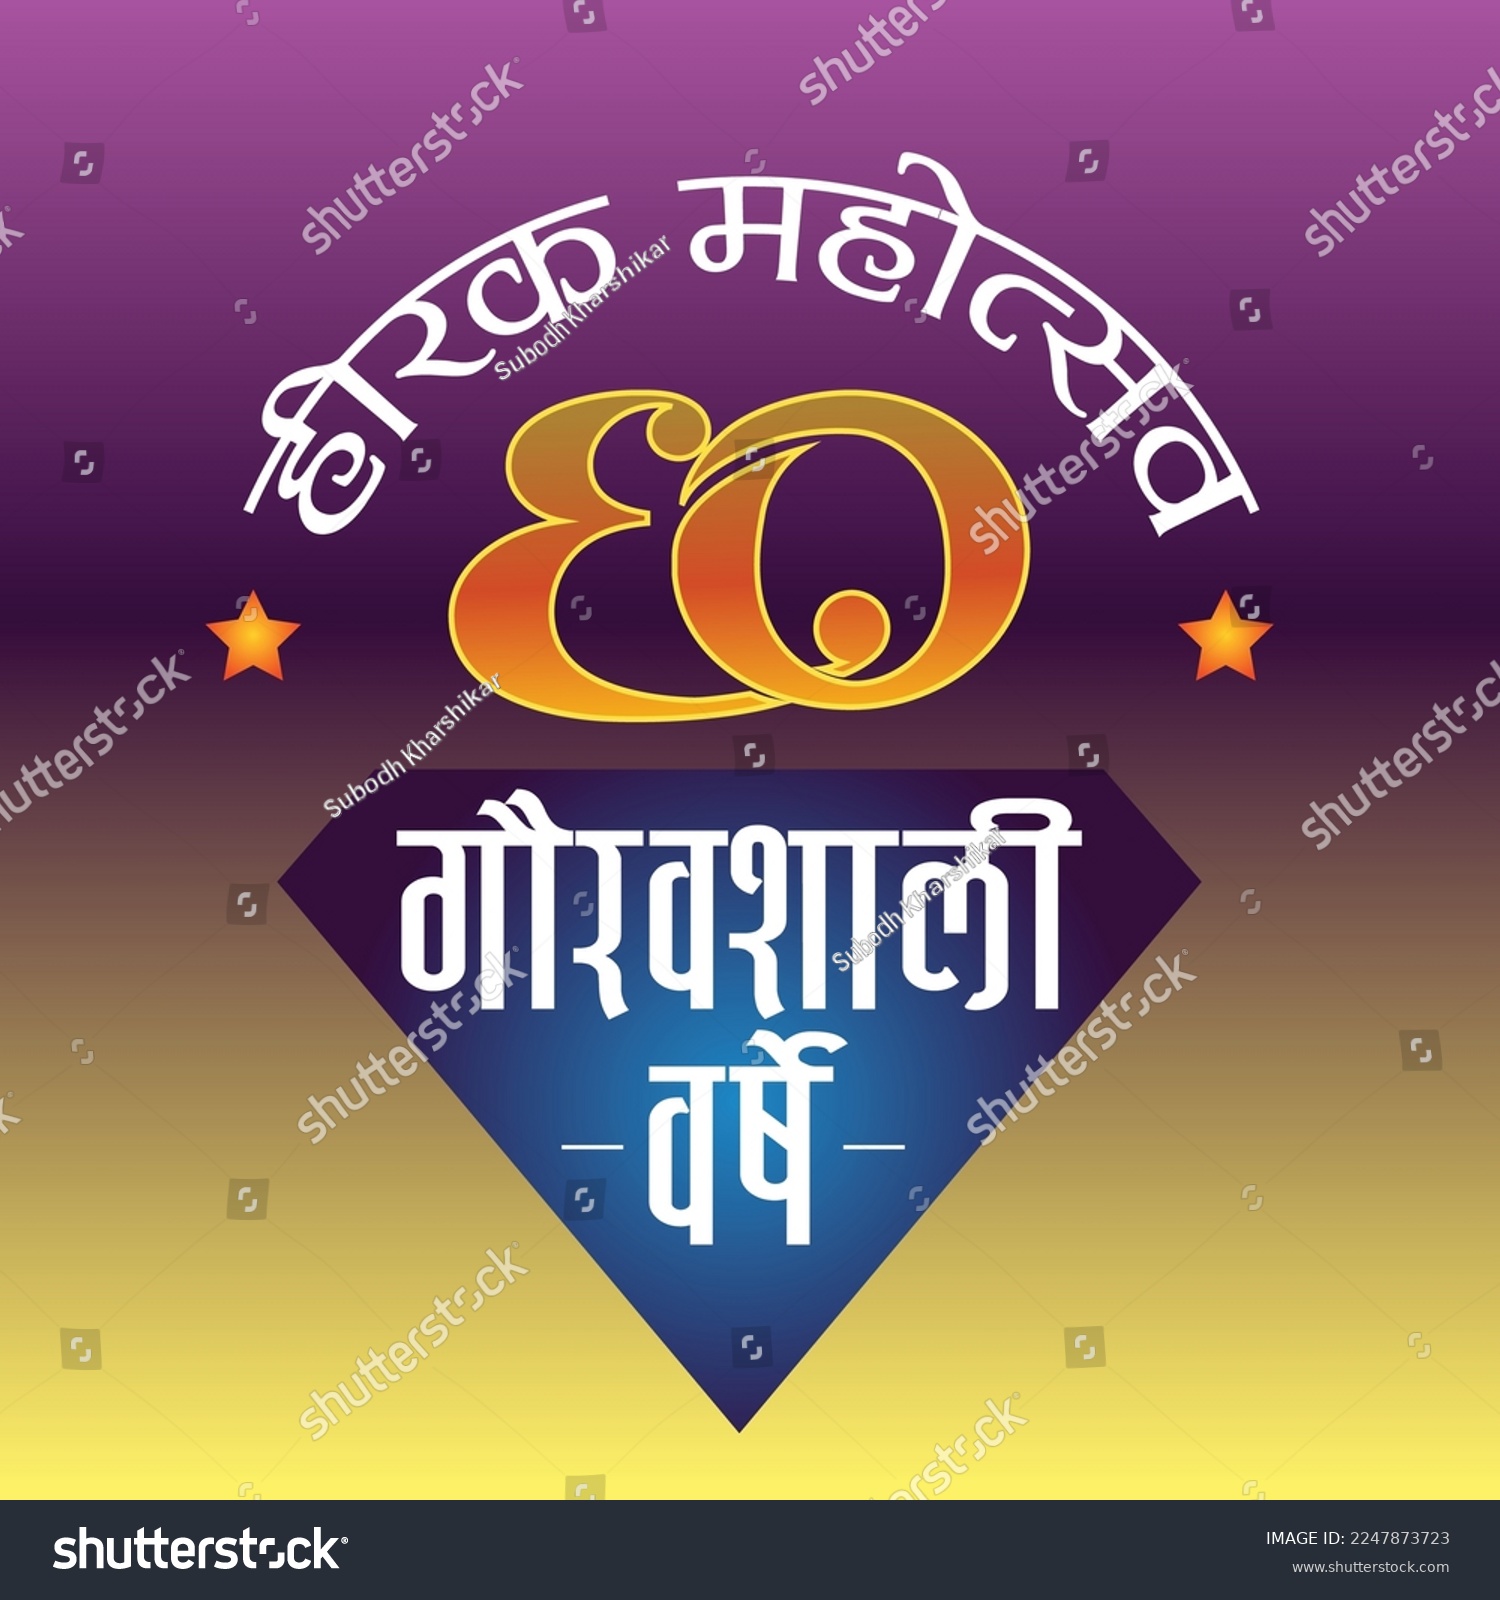 SVG of Heerak Mahotsav 60 gauravashali years meaning Diamond Jubilee 60 dignified years. svg